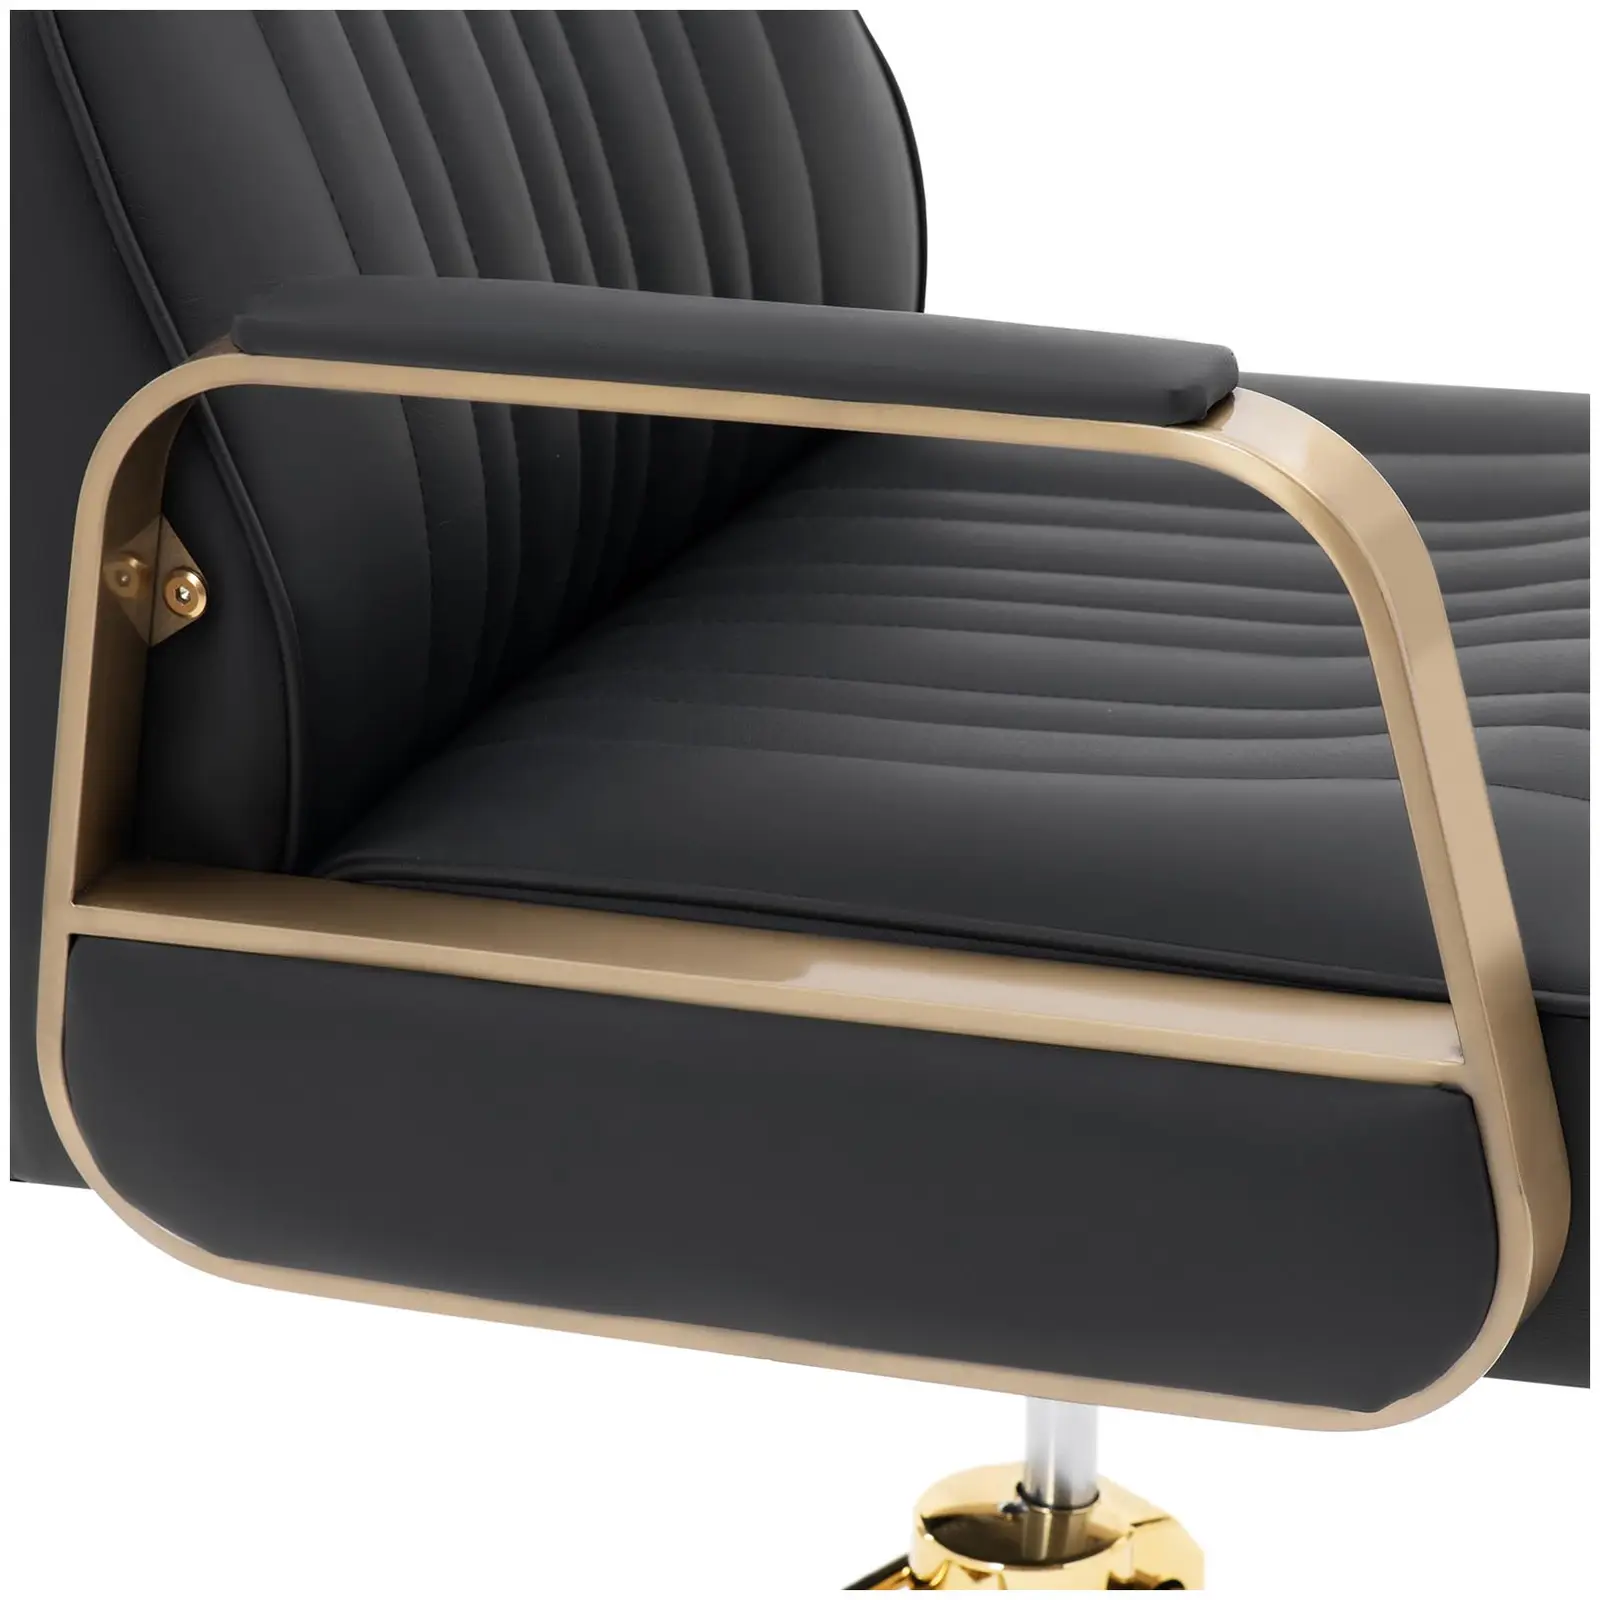 Salono kėdė su atramomis kojoms - 920 - 1070 mm - 200 kg - juoda / auksinė